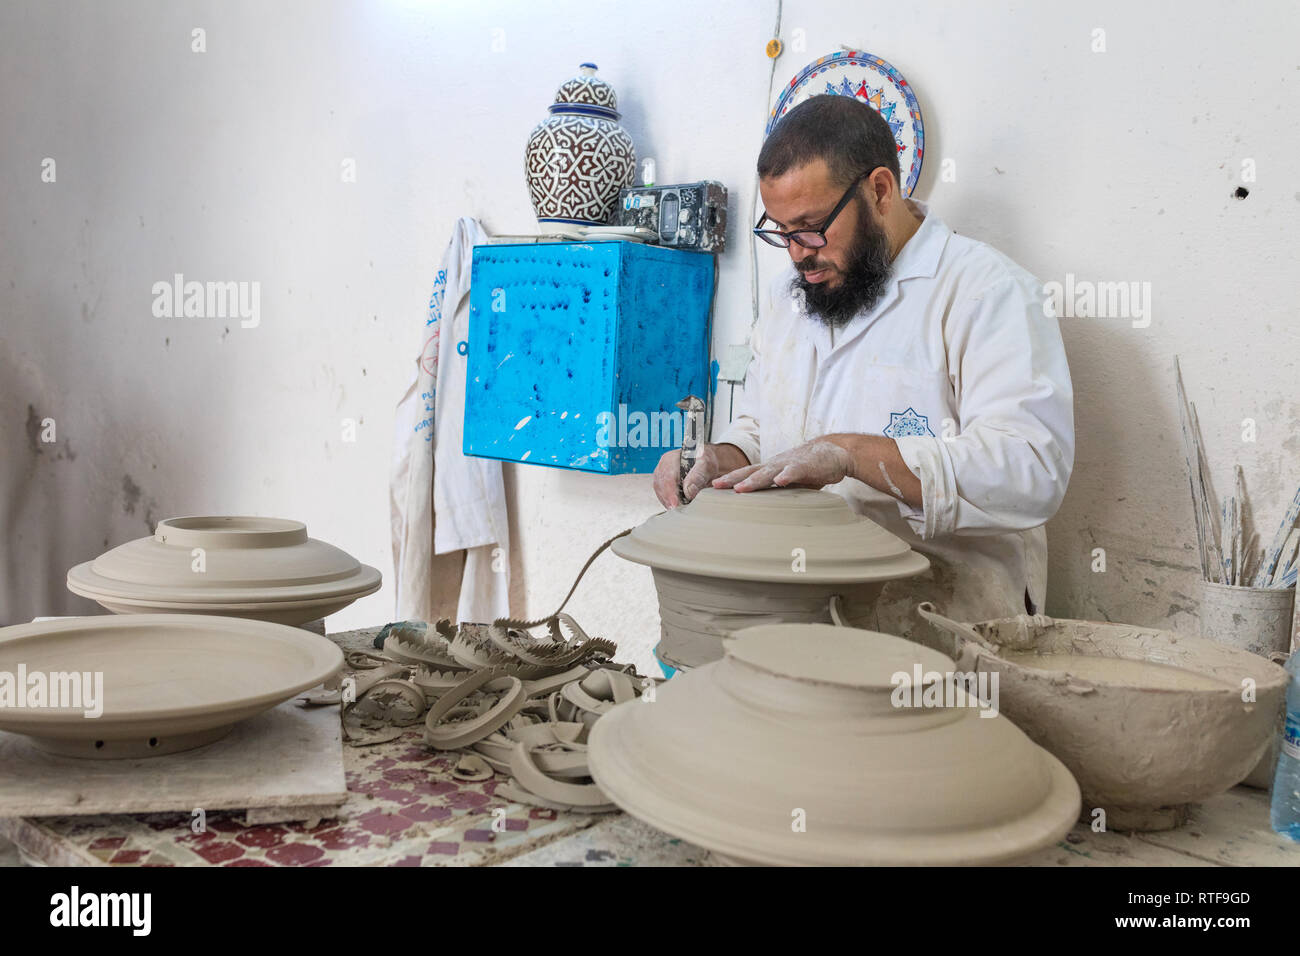 La poterie facory, Fes, Maroc Banque D'Images